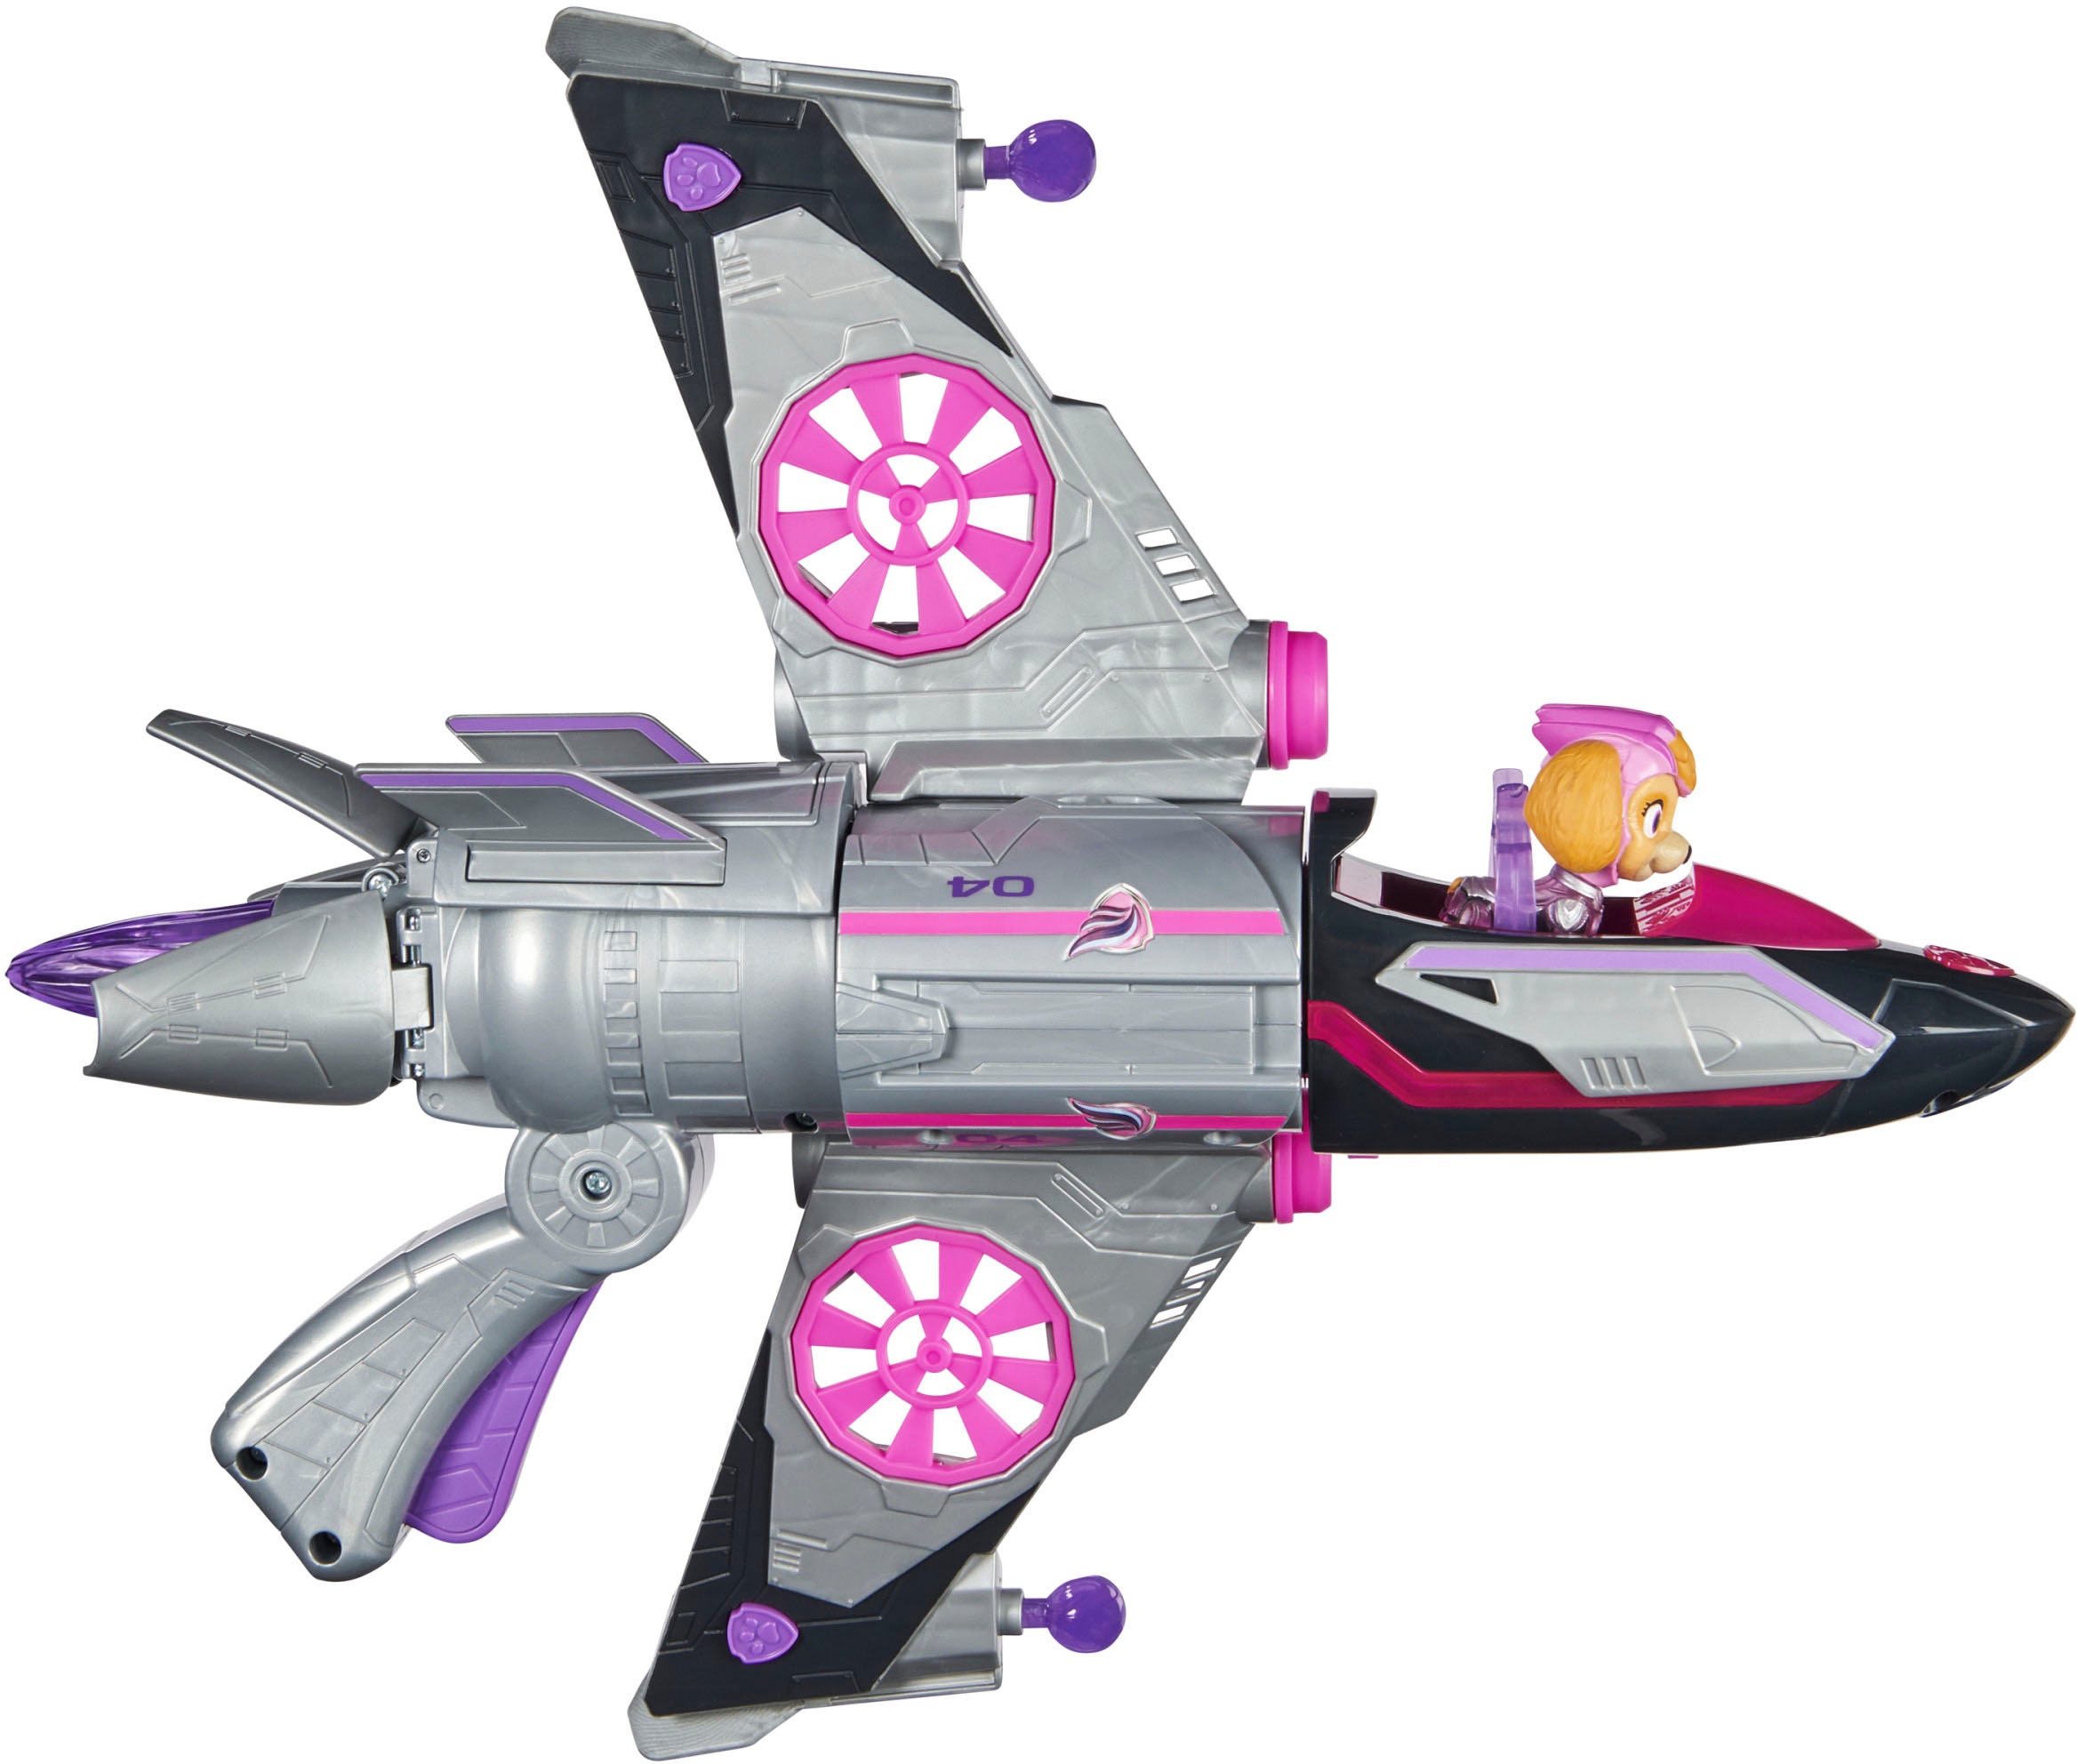 Spin Master Spielzeug-Flugzeug »Paw Patrol - Movie II - Skyes Deluxe Jet-Flieger«, inkl. Skye Figur, mit Licht- und Soundeffekt